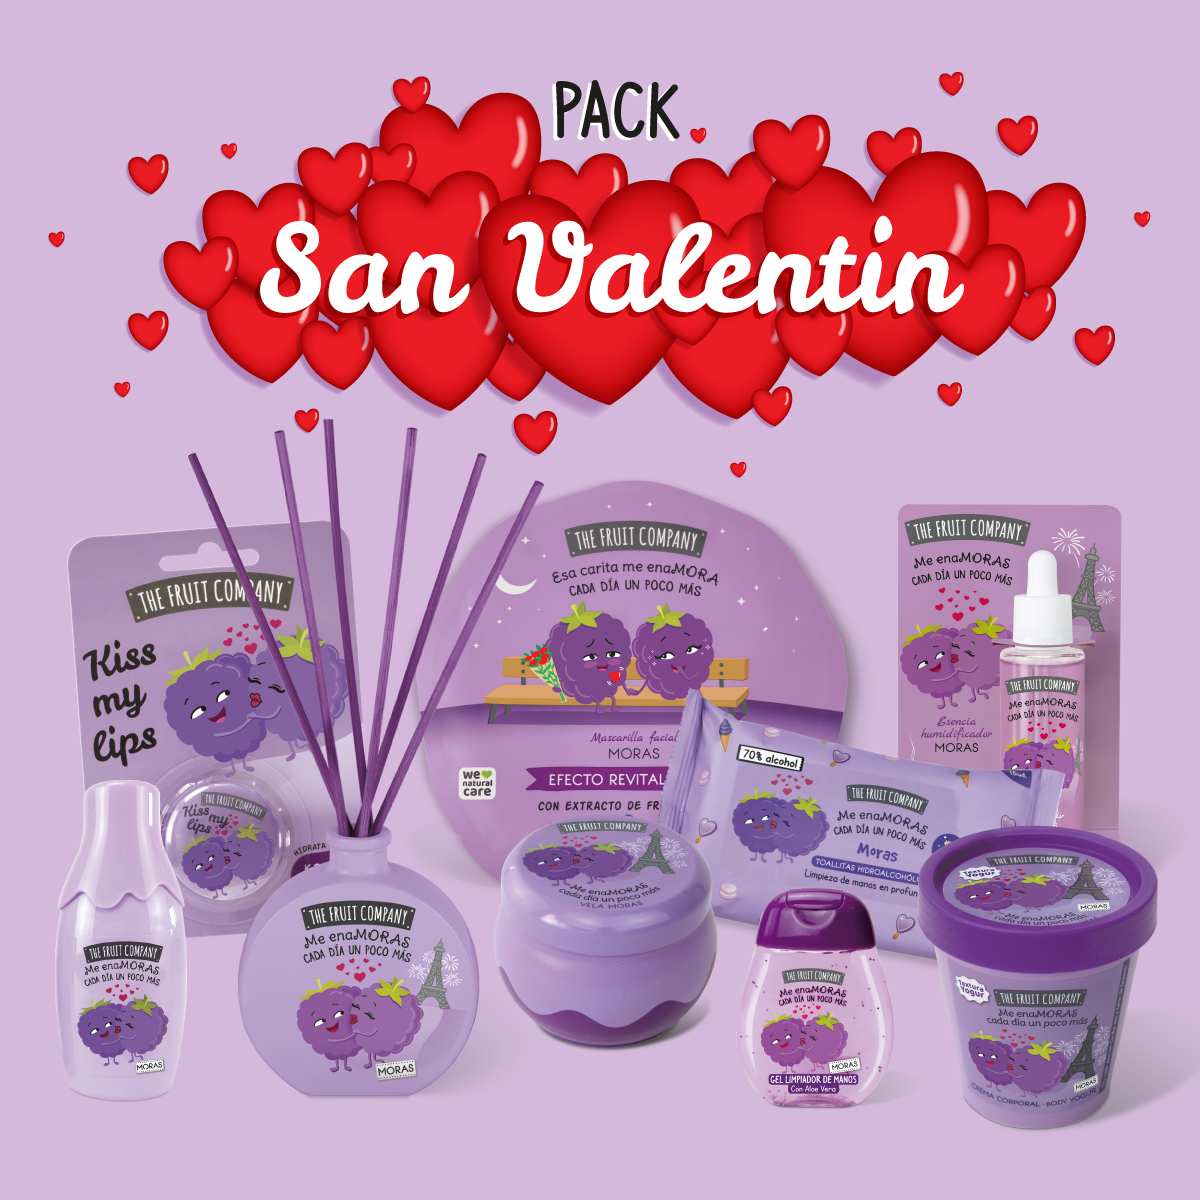 Pack San Valentín The Fruit Company